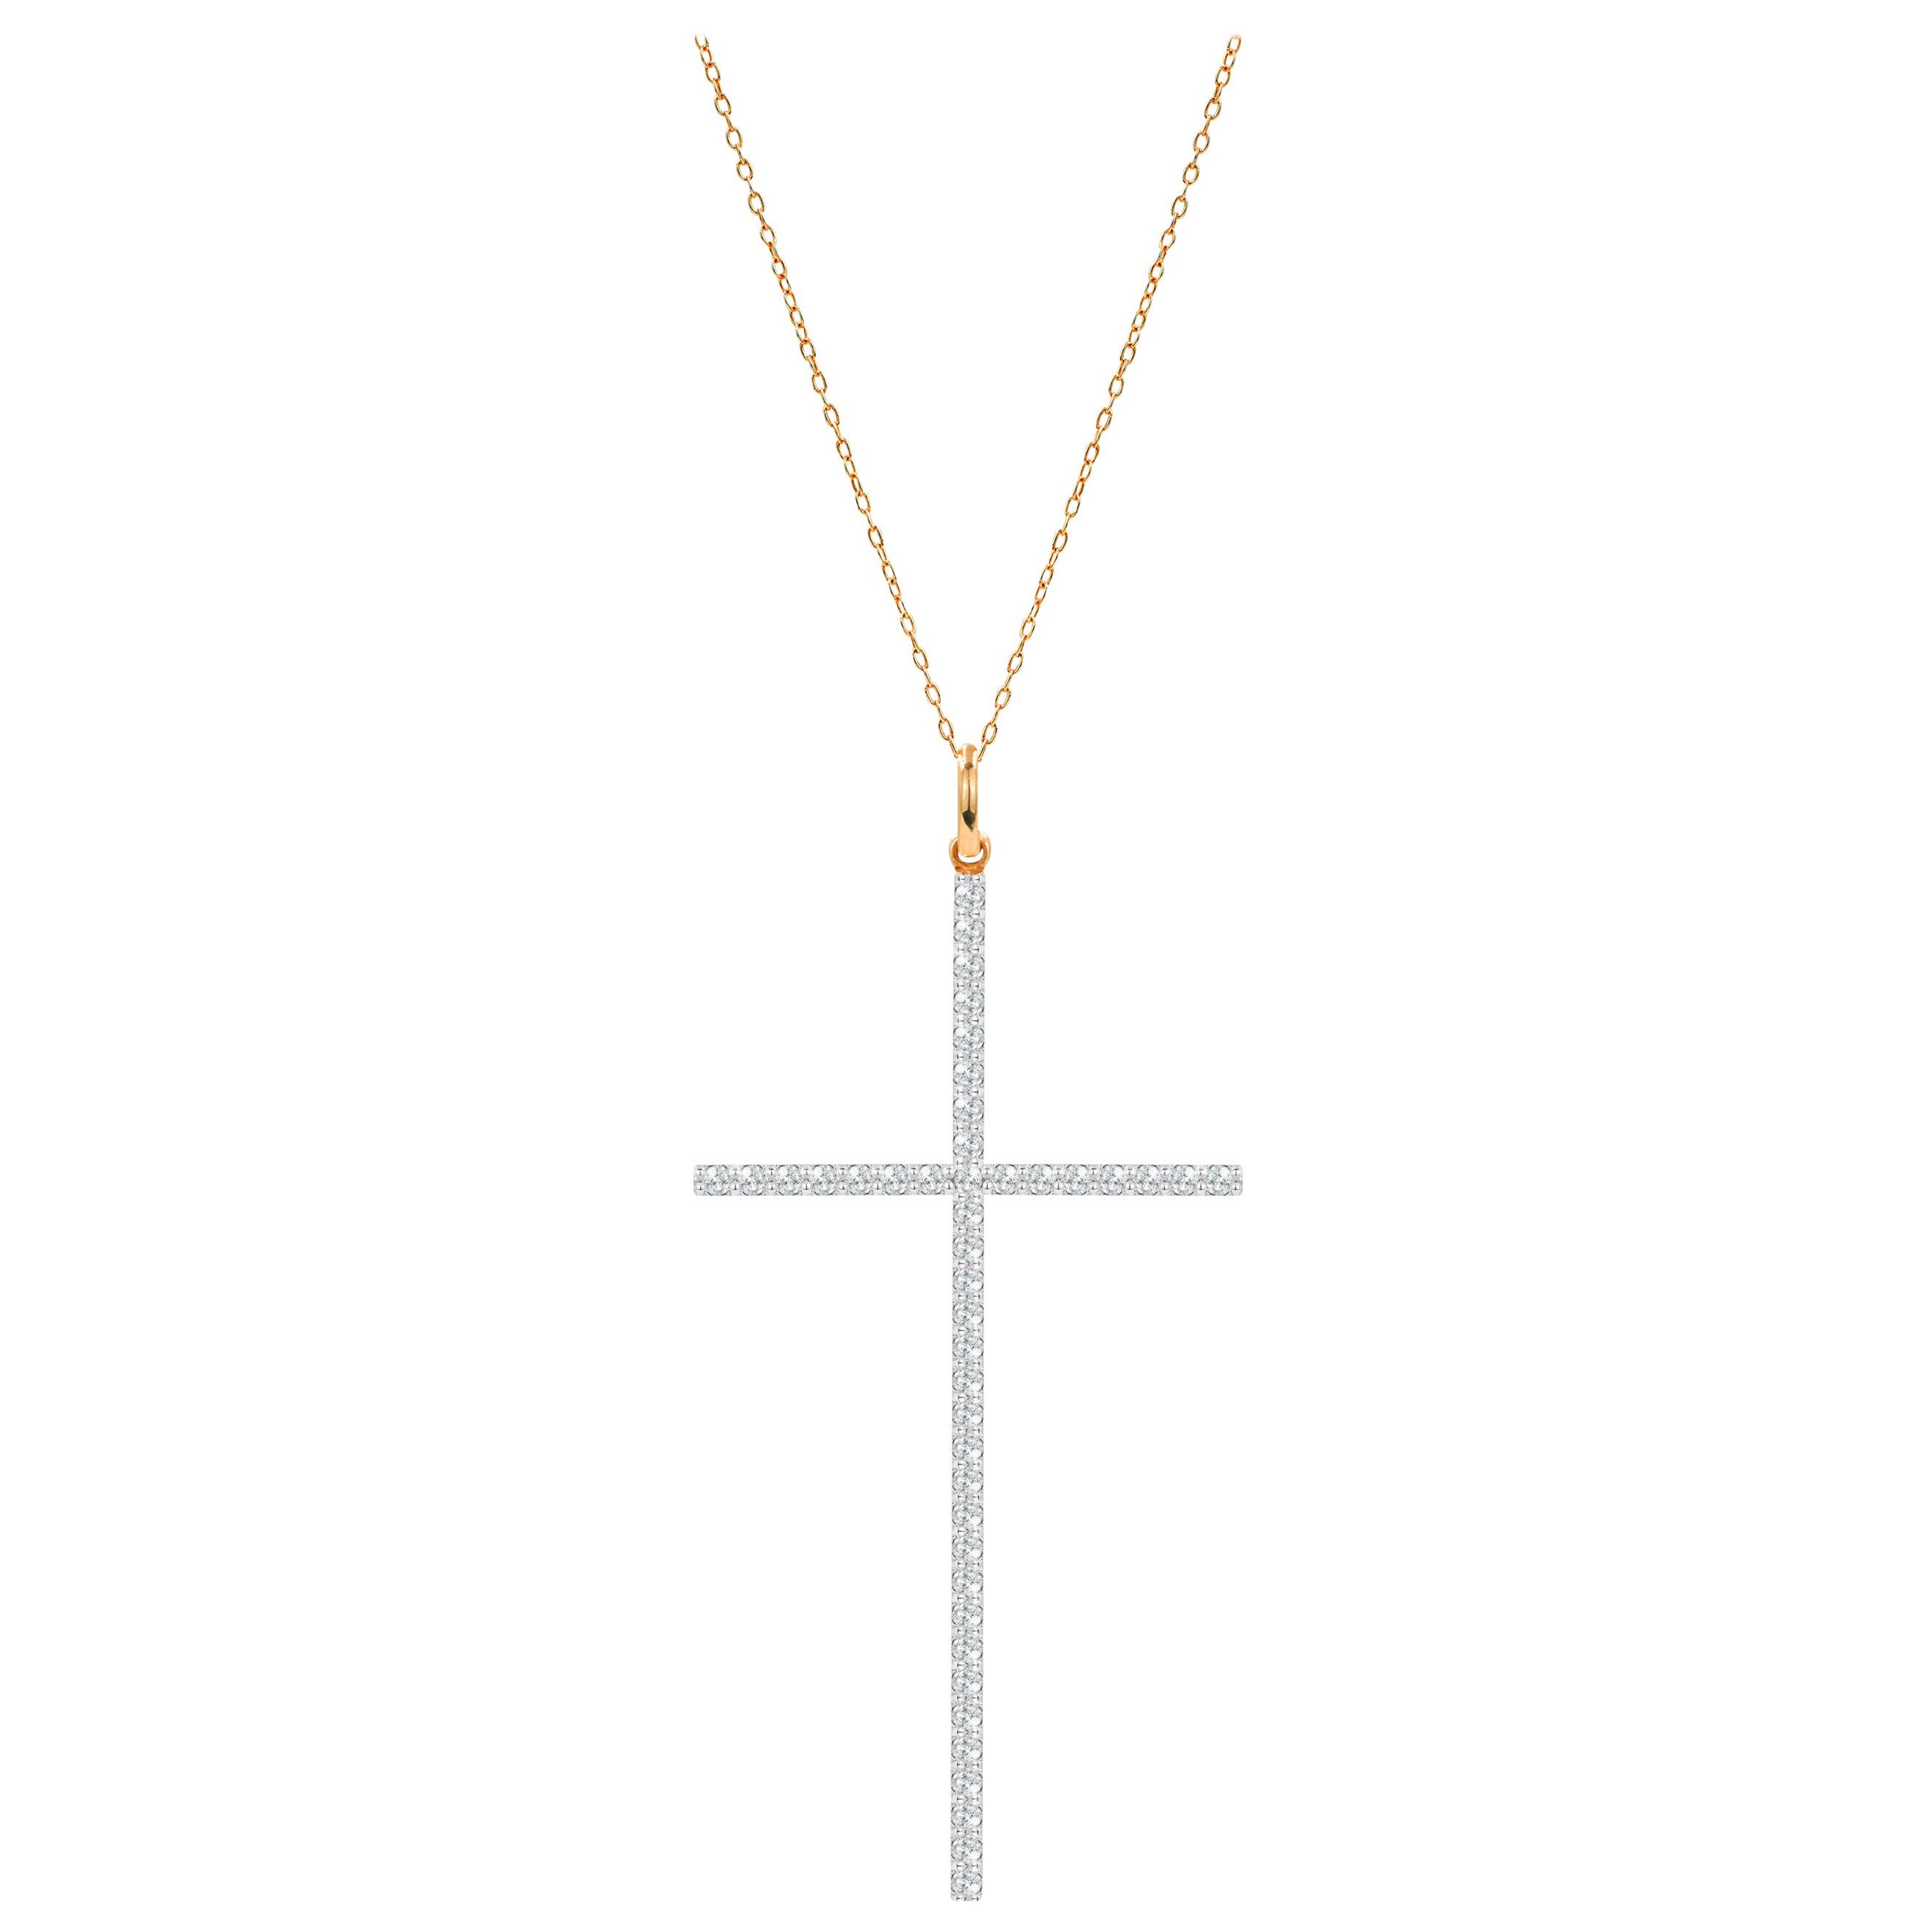 Long collier pendentif croix en or 18 carats avec diamants pavés de 0,49 carat